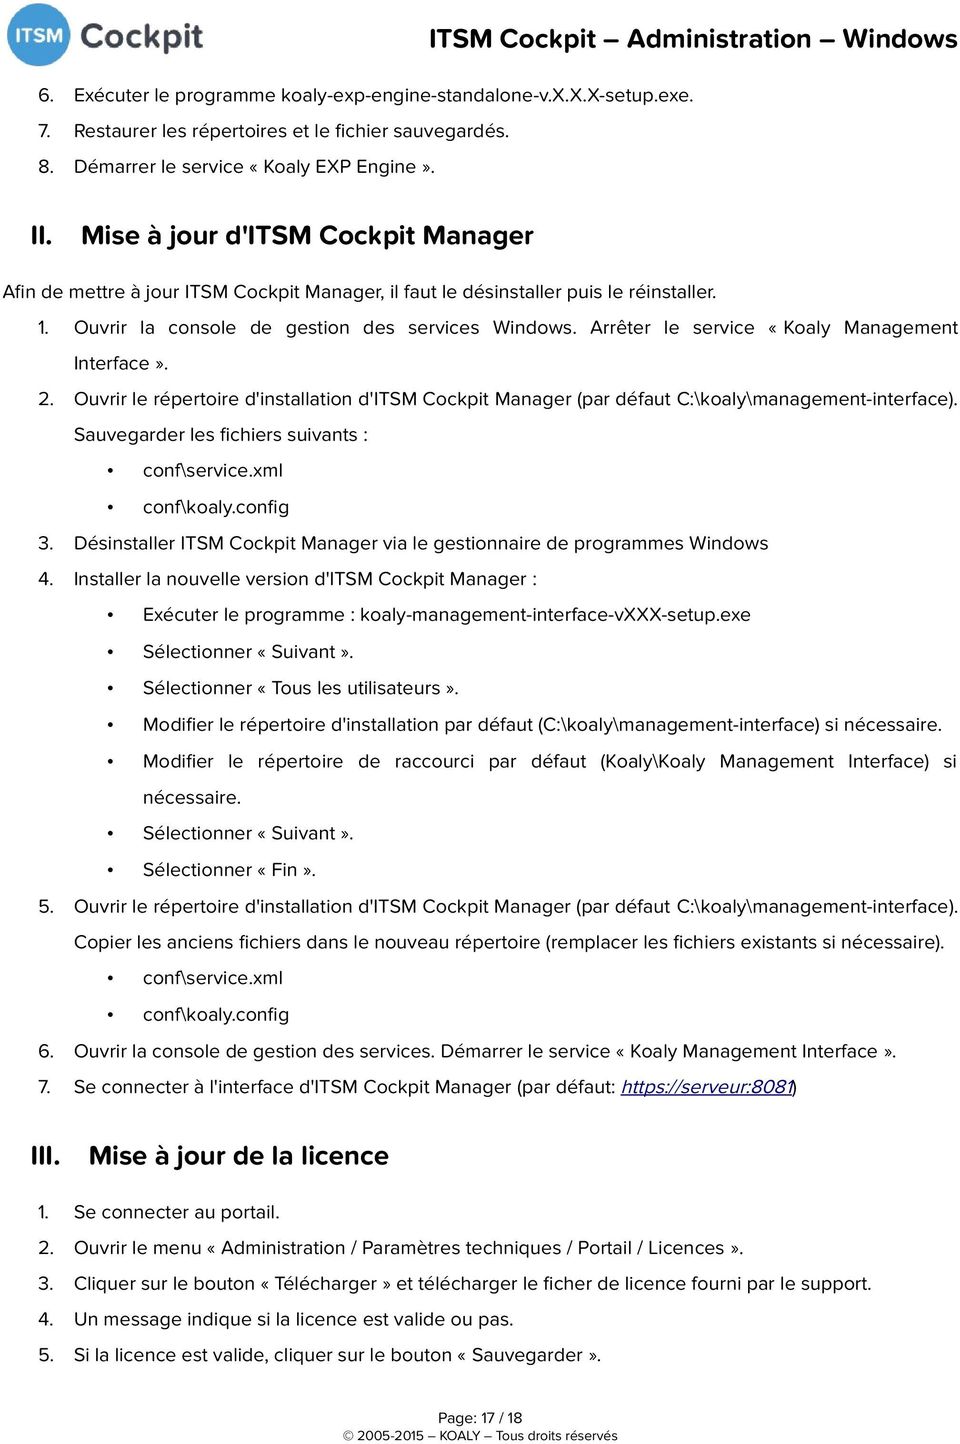 Arrêter le service «Koaly Management Interface». 2. Ouvrir le répertoire d'installation d'itsm Cockpit Manager (par défaut C:\koaly\management-interface).